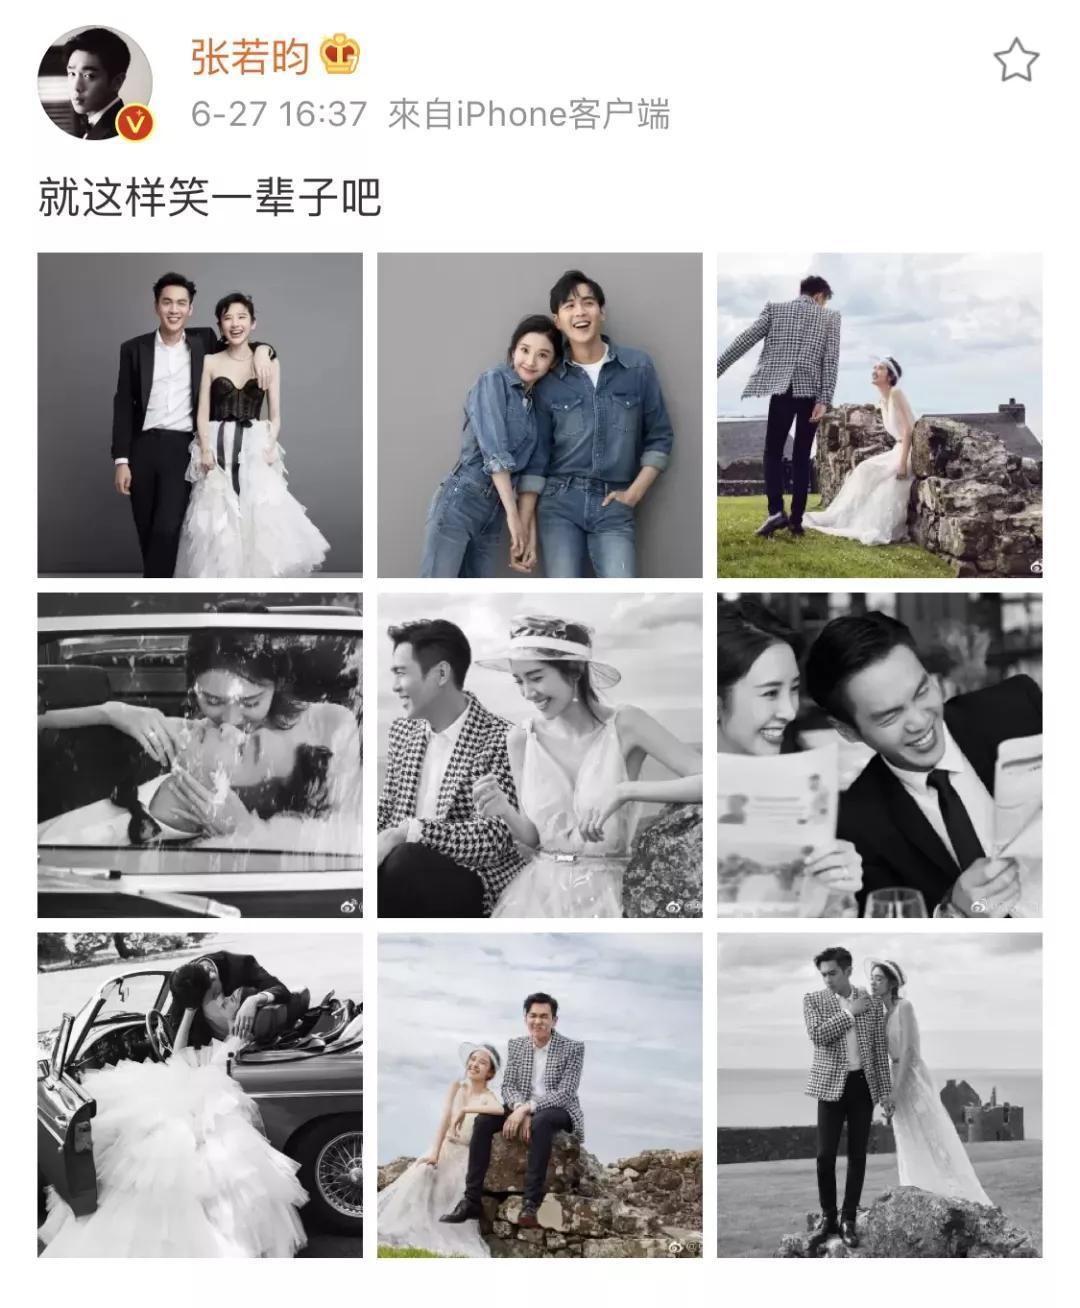 北京时间下午4点,张若昀发了和唐艺昕的婚纱照九宫格,俩人在照片里